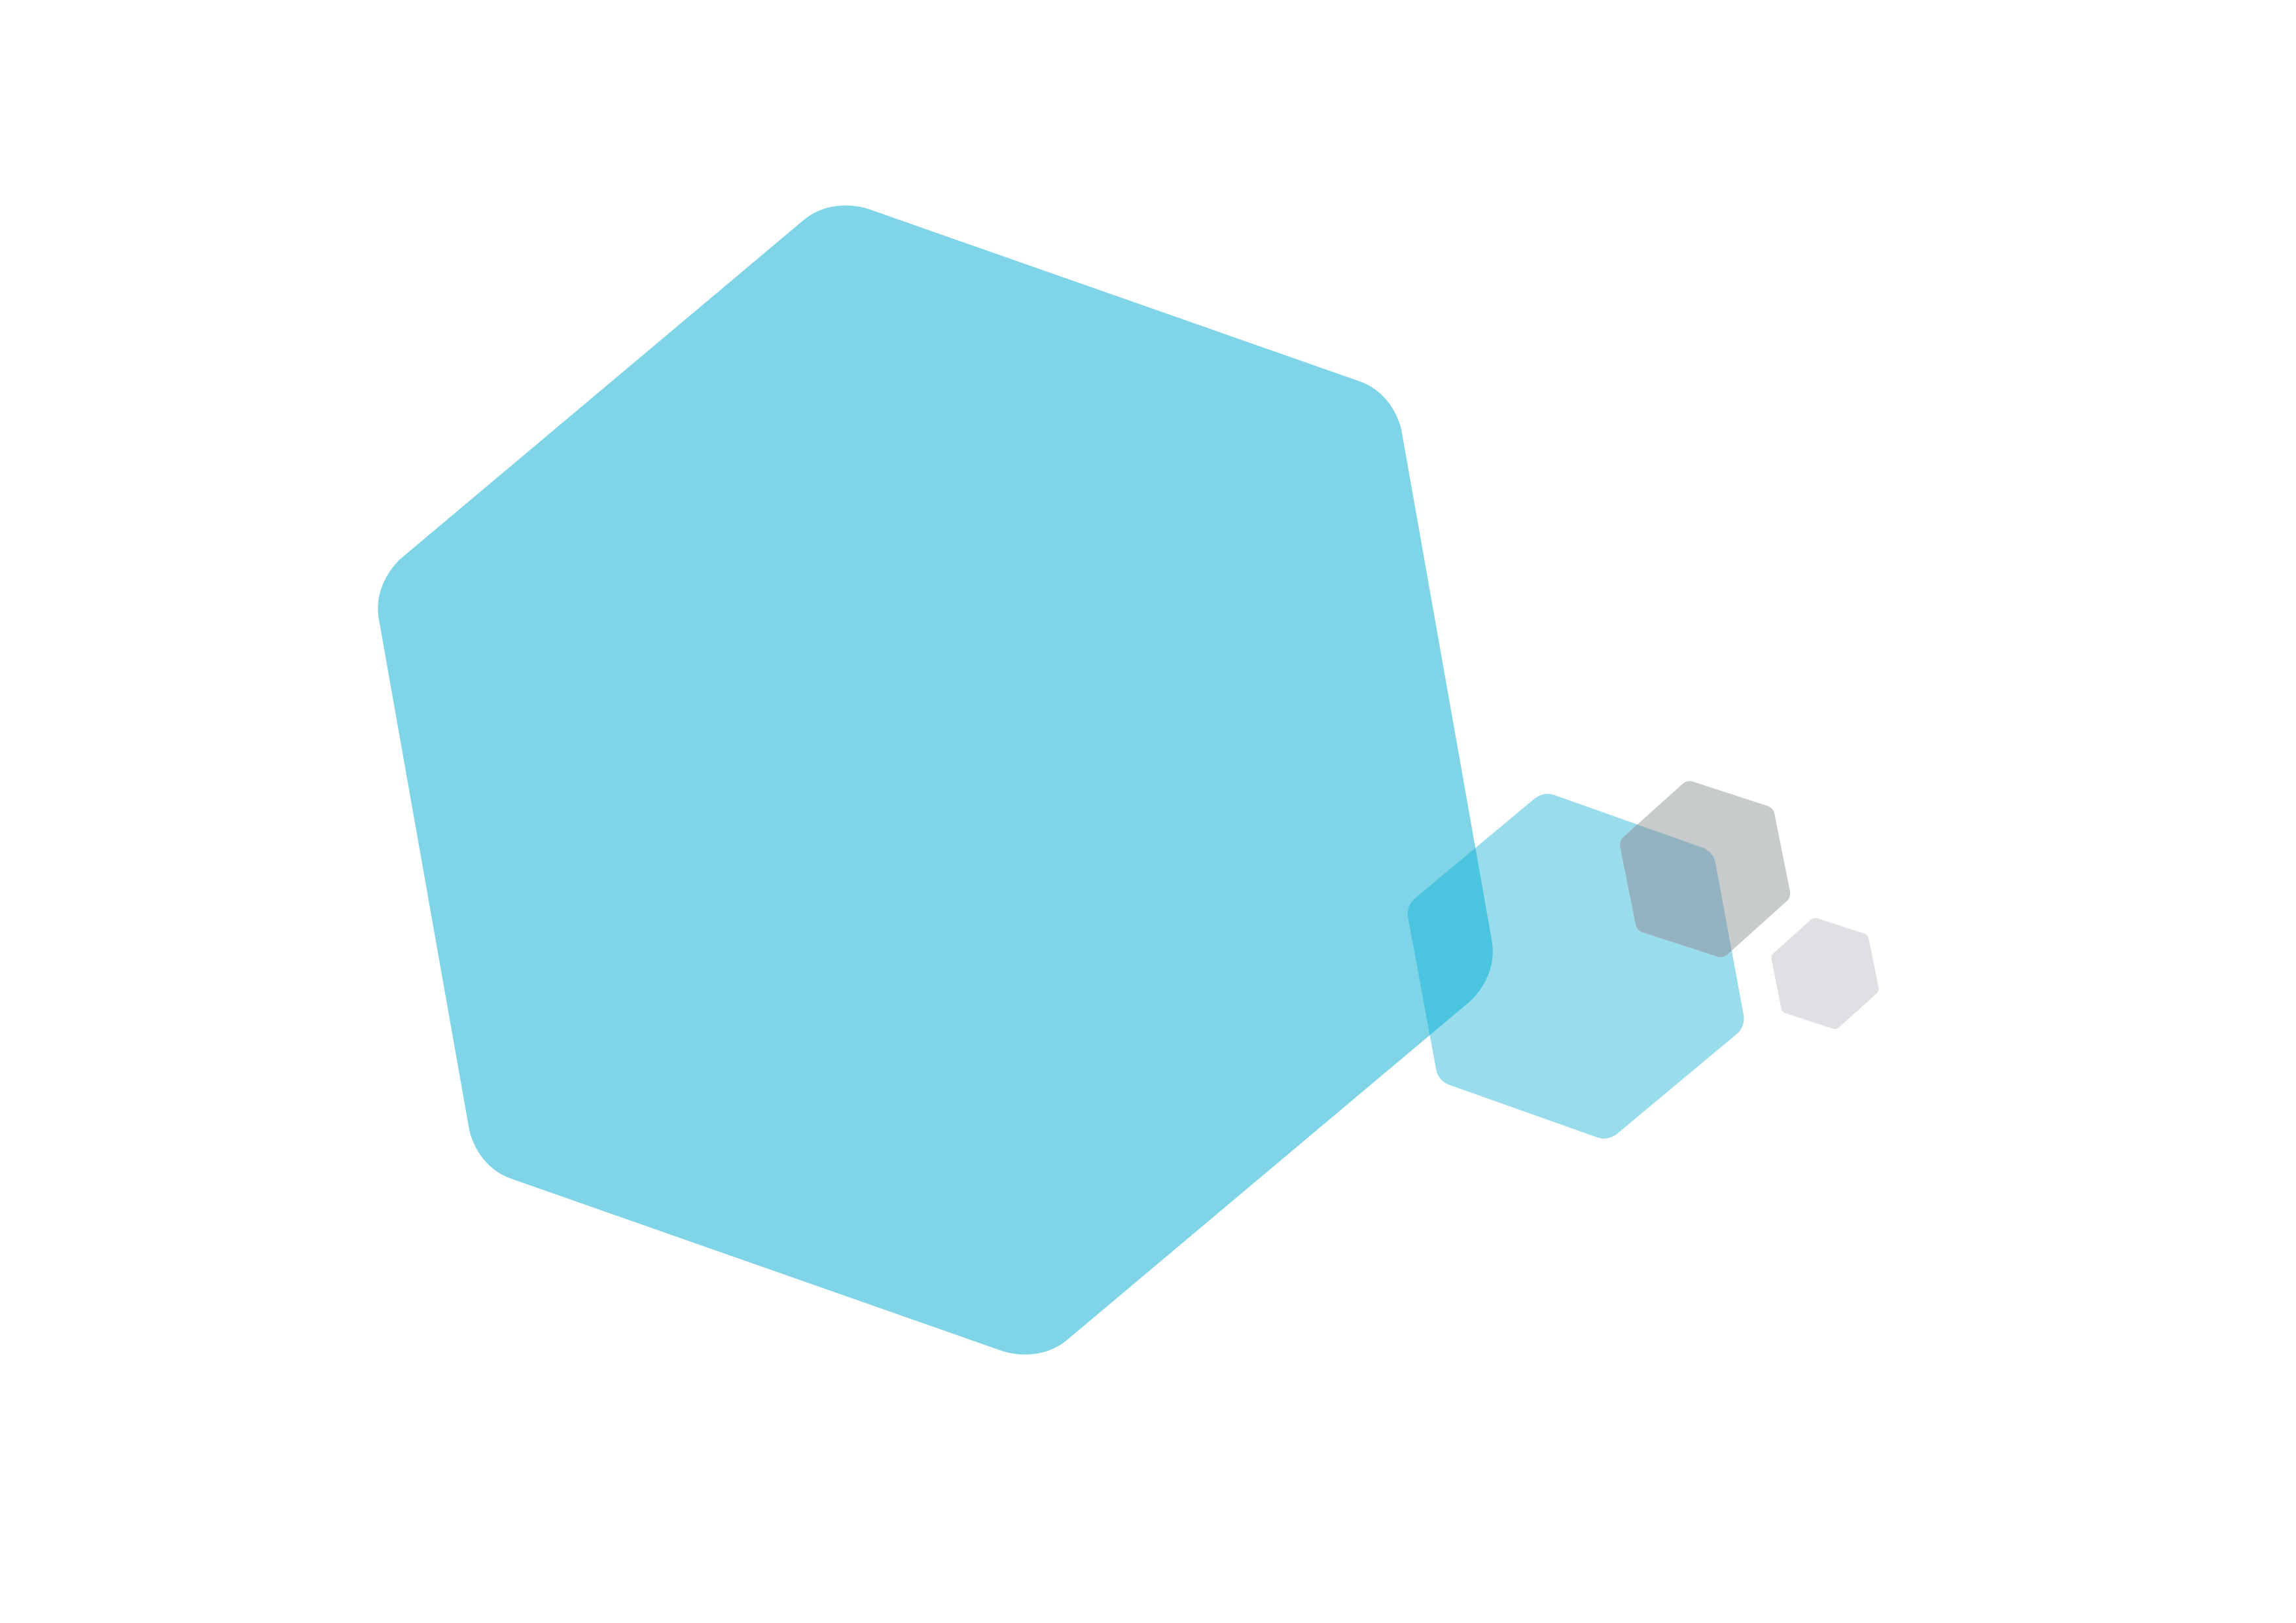 NHSc Hexagon